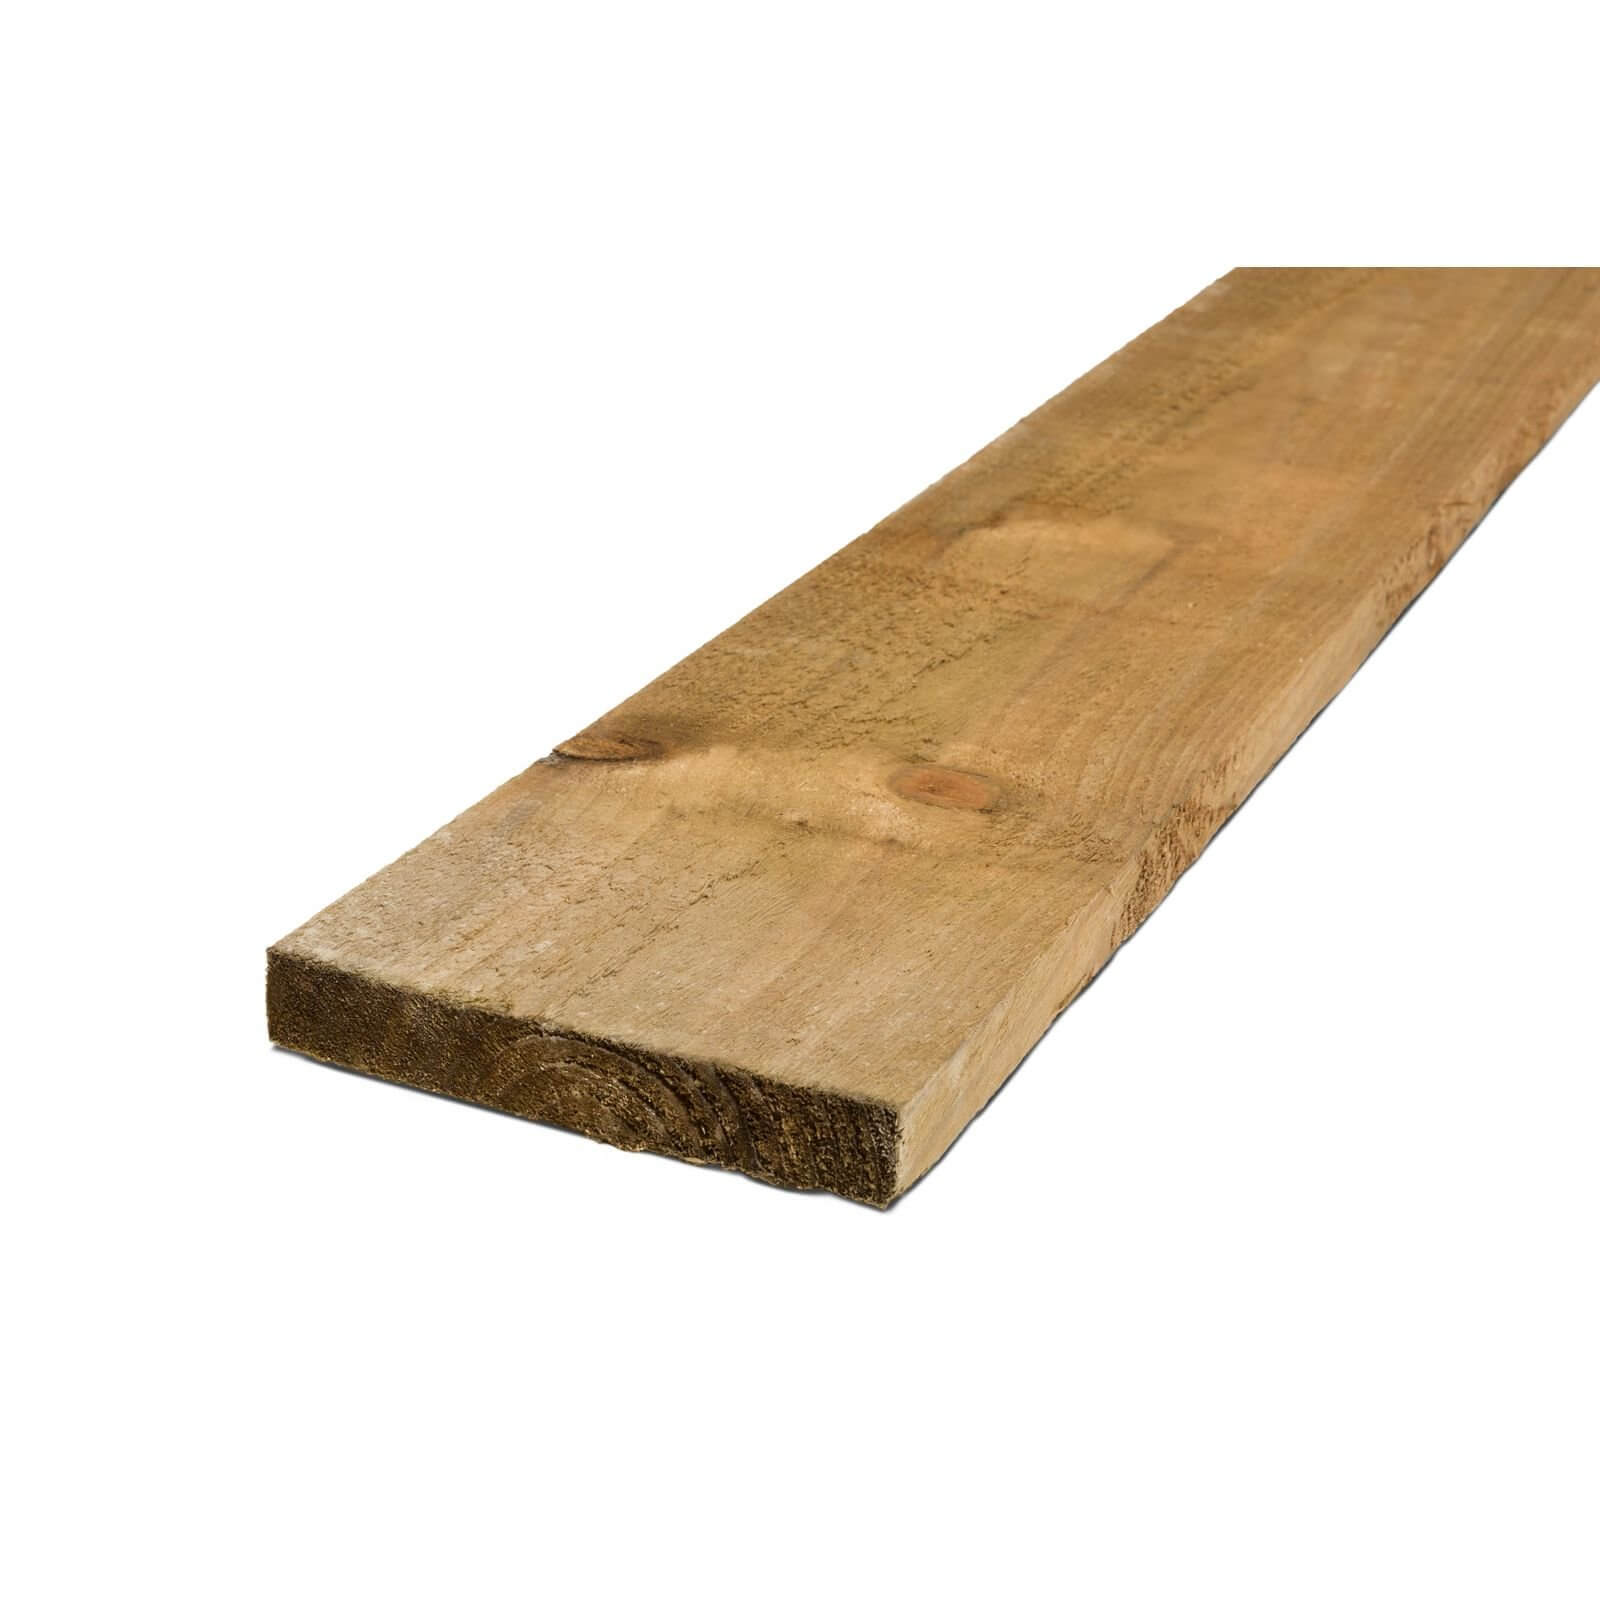 Metsa Gravel Board Green Wood Fence Board 2.4m (22 x 150 x 2400mm